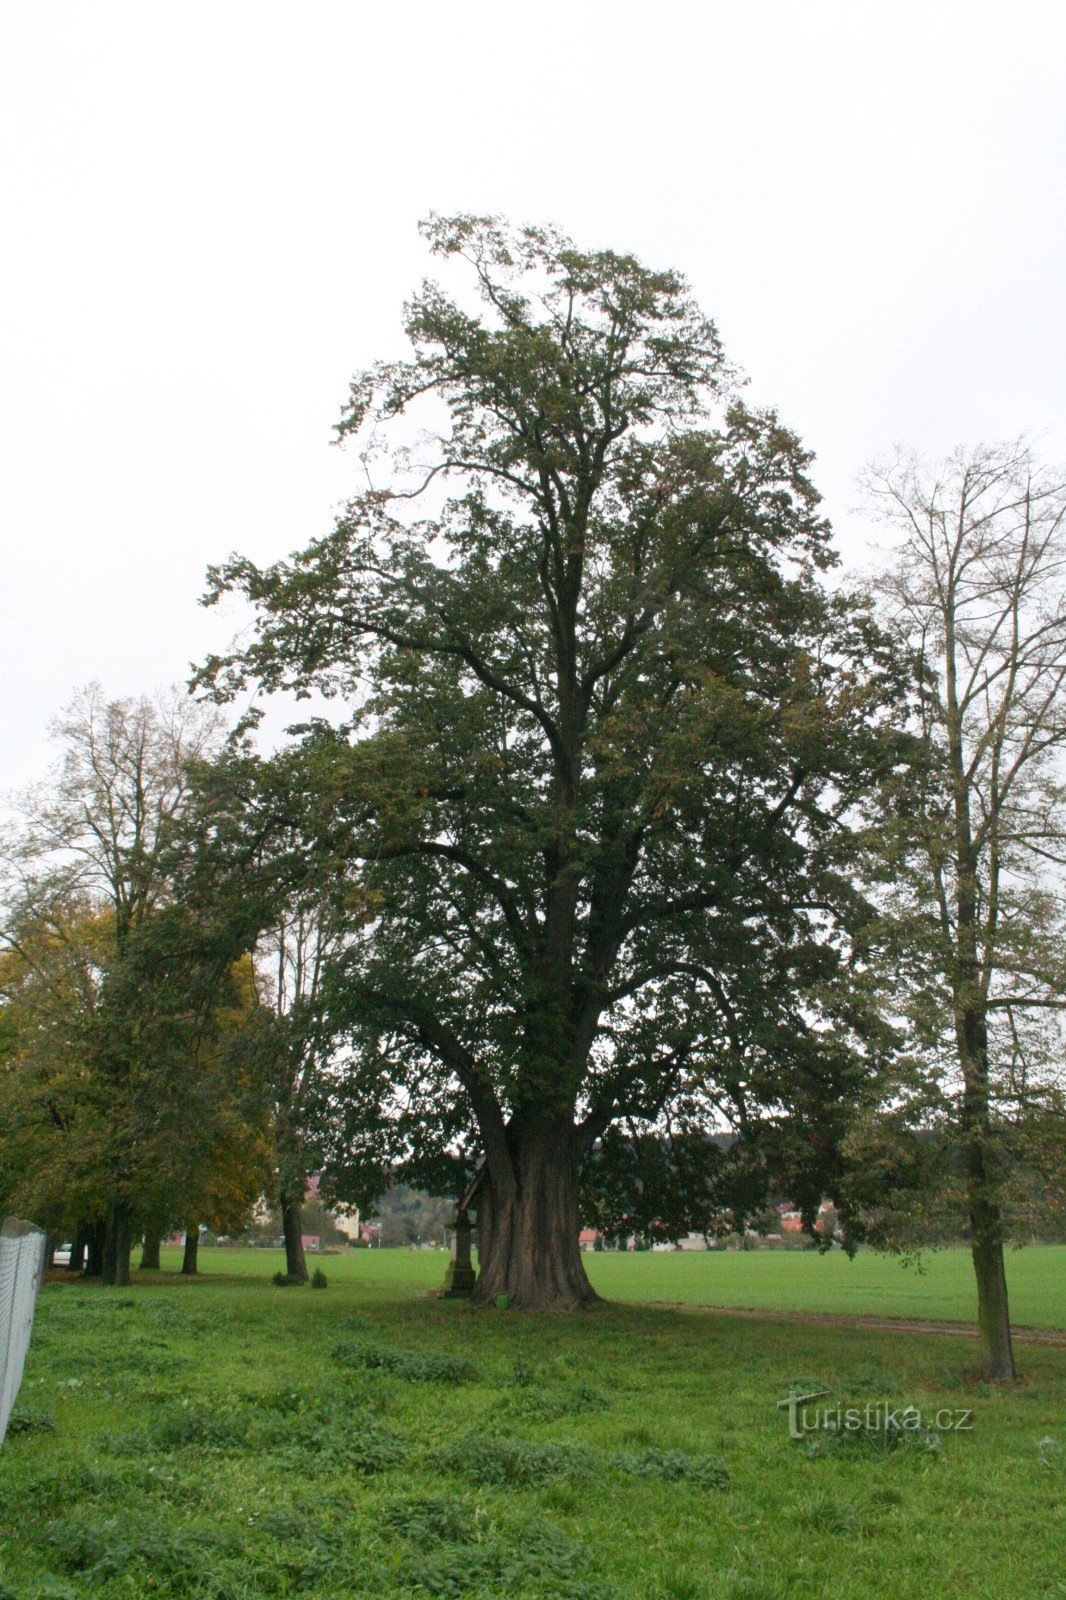 Αναμνηστικό δέντρο ασβέστη στο Dolany